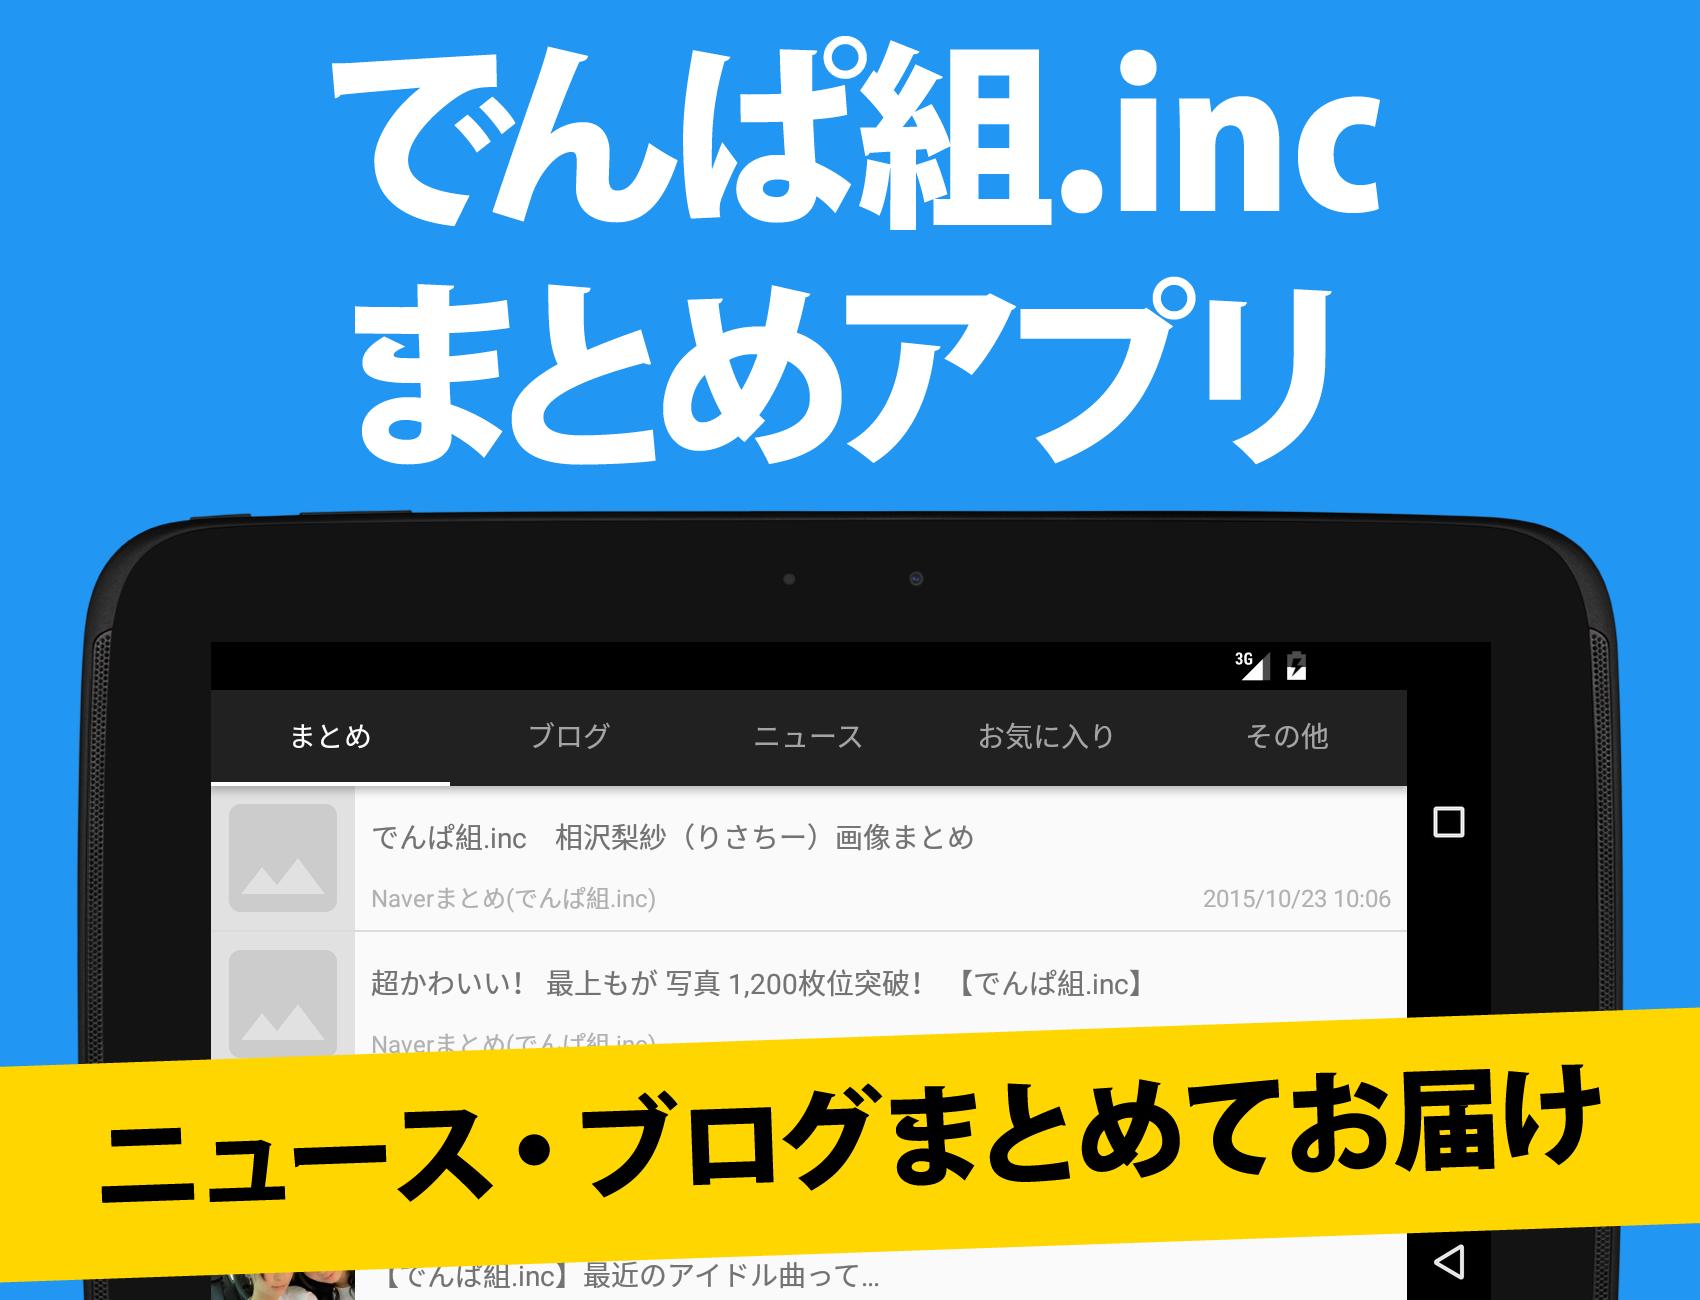 でんぱ速報 For でんぱ組 Inc For Android Apk Download